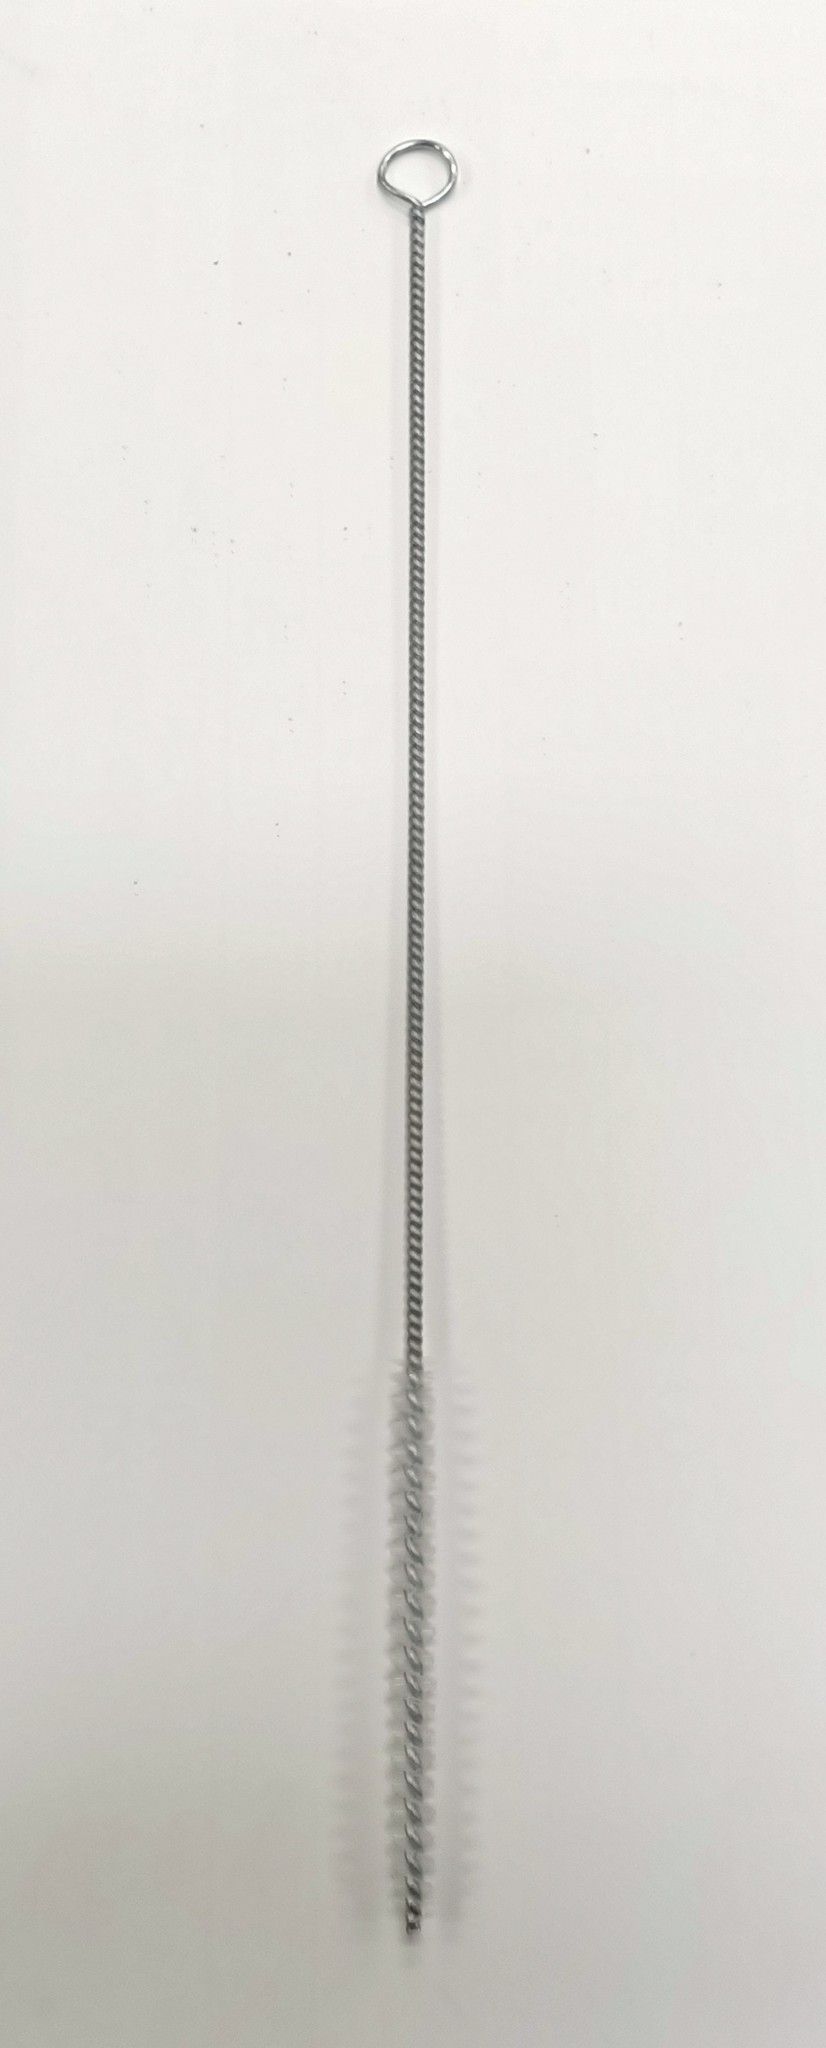 Scovolo per pulizia fori setola nylon diametro mm 8 lunghezza cm 30, Utensileria Manuale Spazzole scovoli